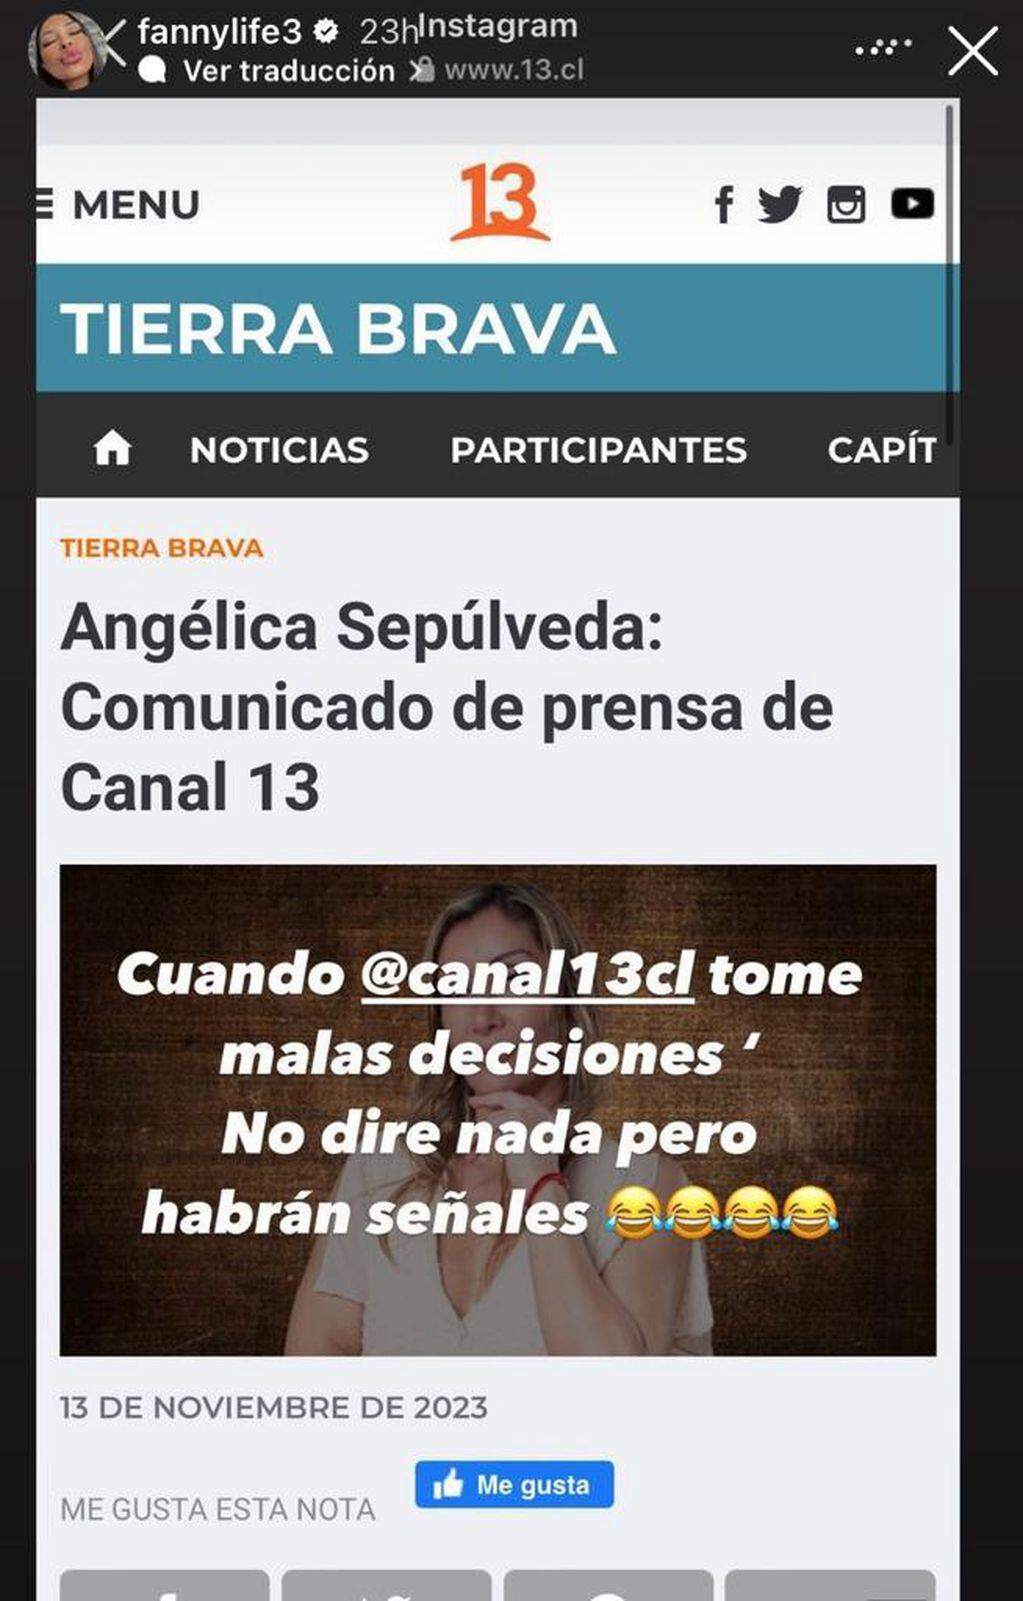 Fanny Cuevas opina sobre la salida de Angélica Sepúlveda de “Tierra Brava”